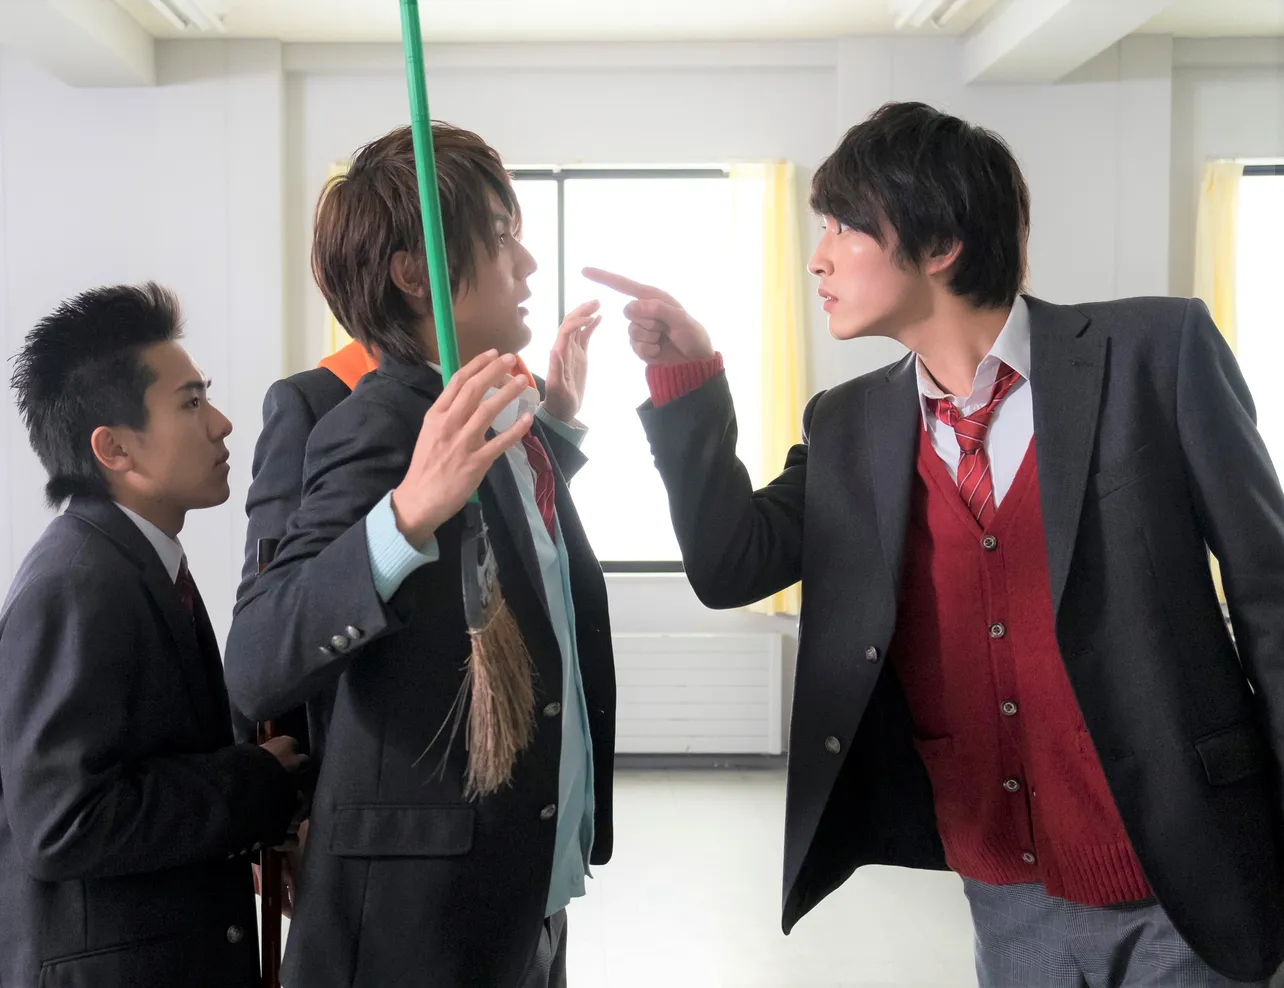 ドラマ「覚悟はいいかそこの女子。」(TBSほか)で、ライバルを演じる中川大志(中)と杉野遥亮(右)